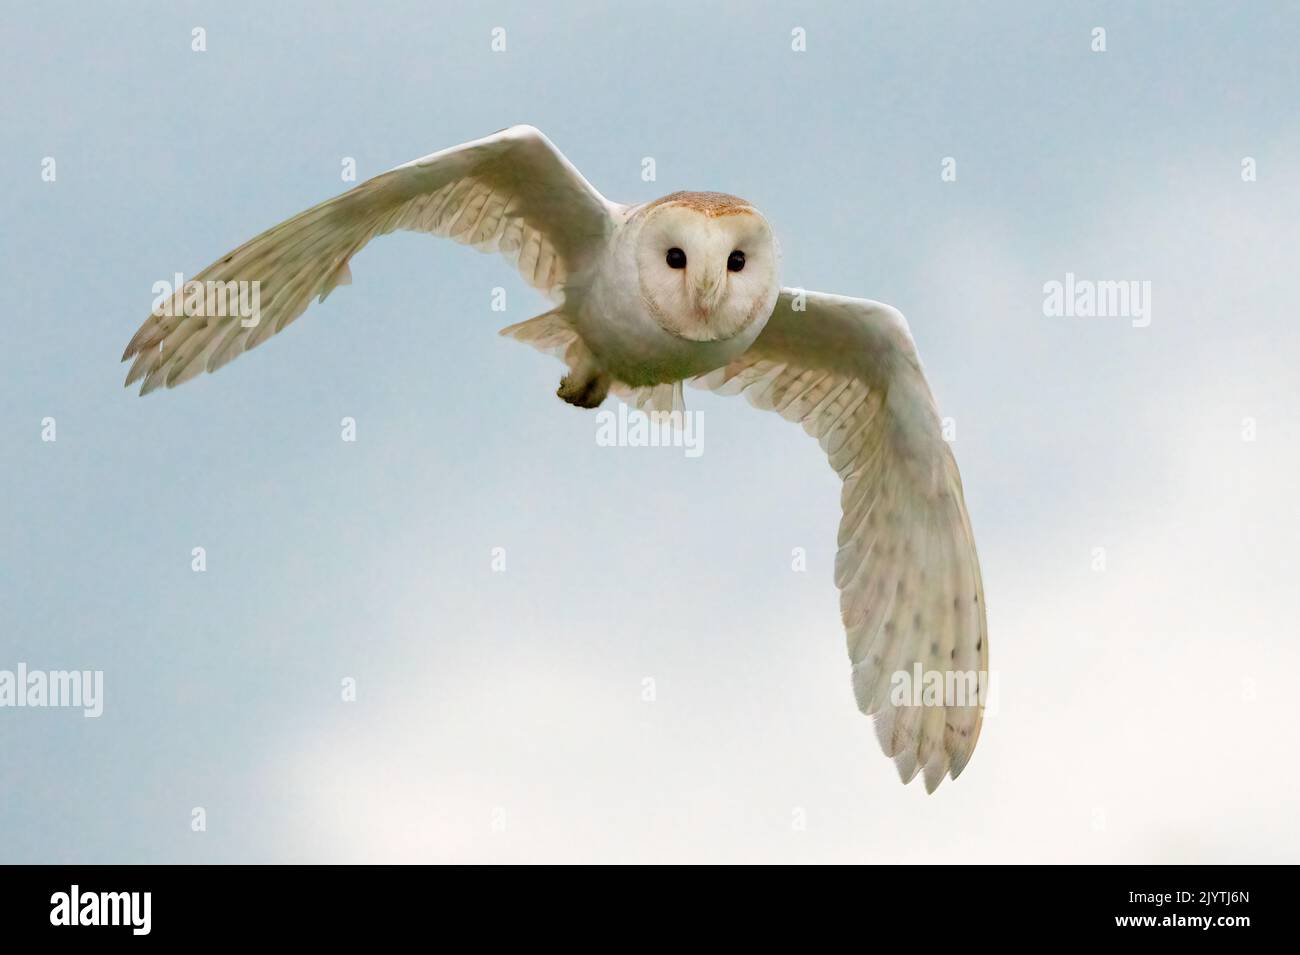 Barn owl (Tyto alba)in flight at sunset, England Stock Photo